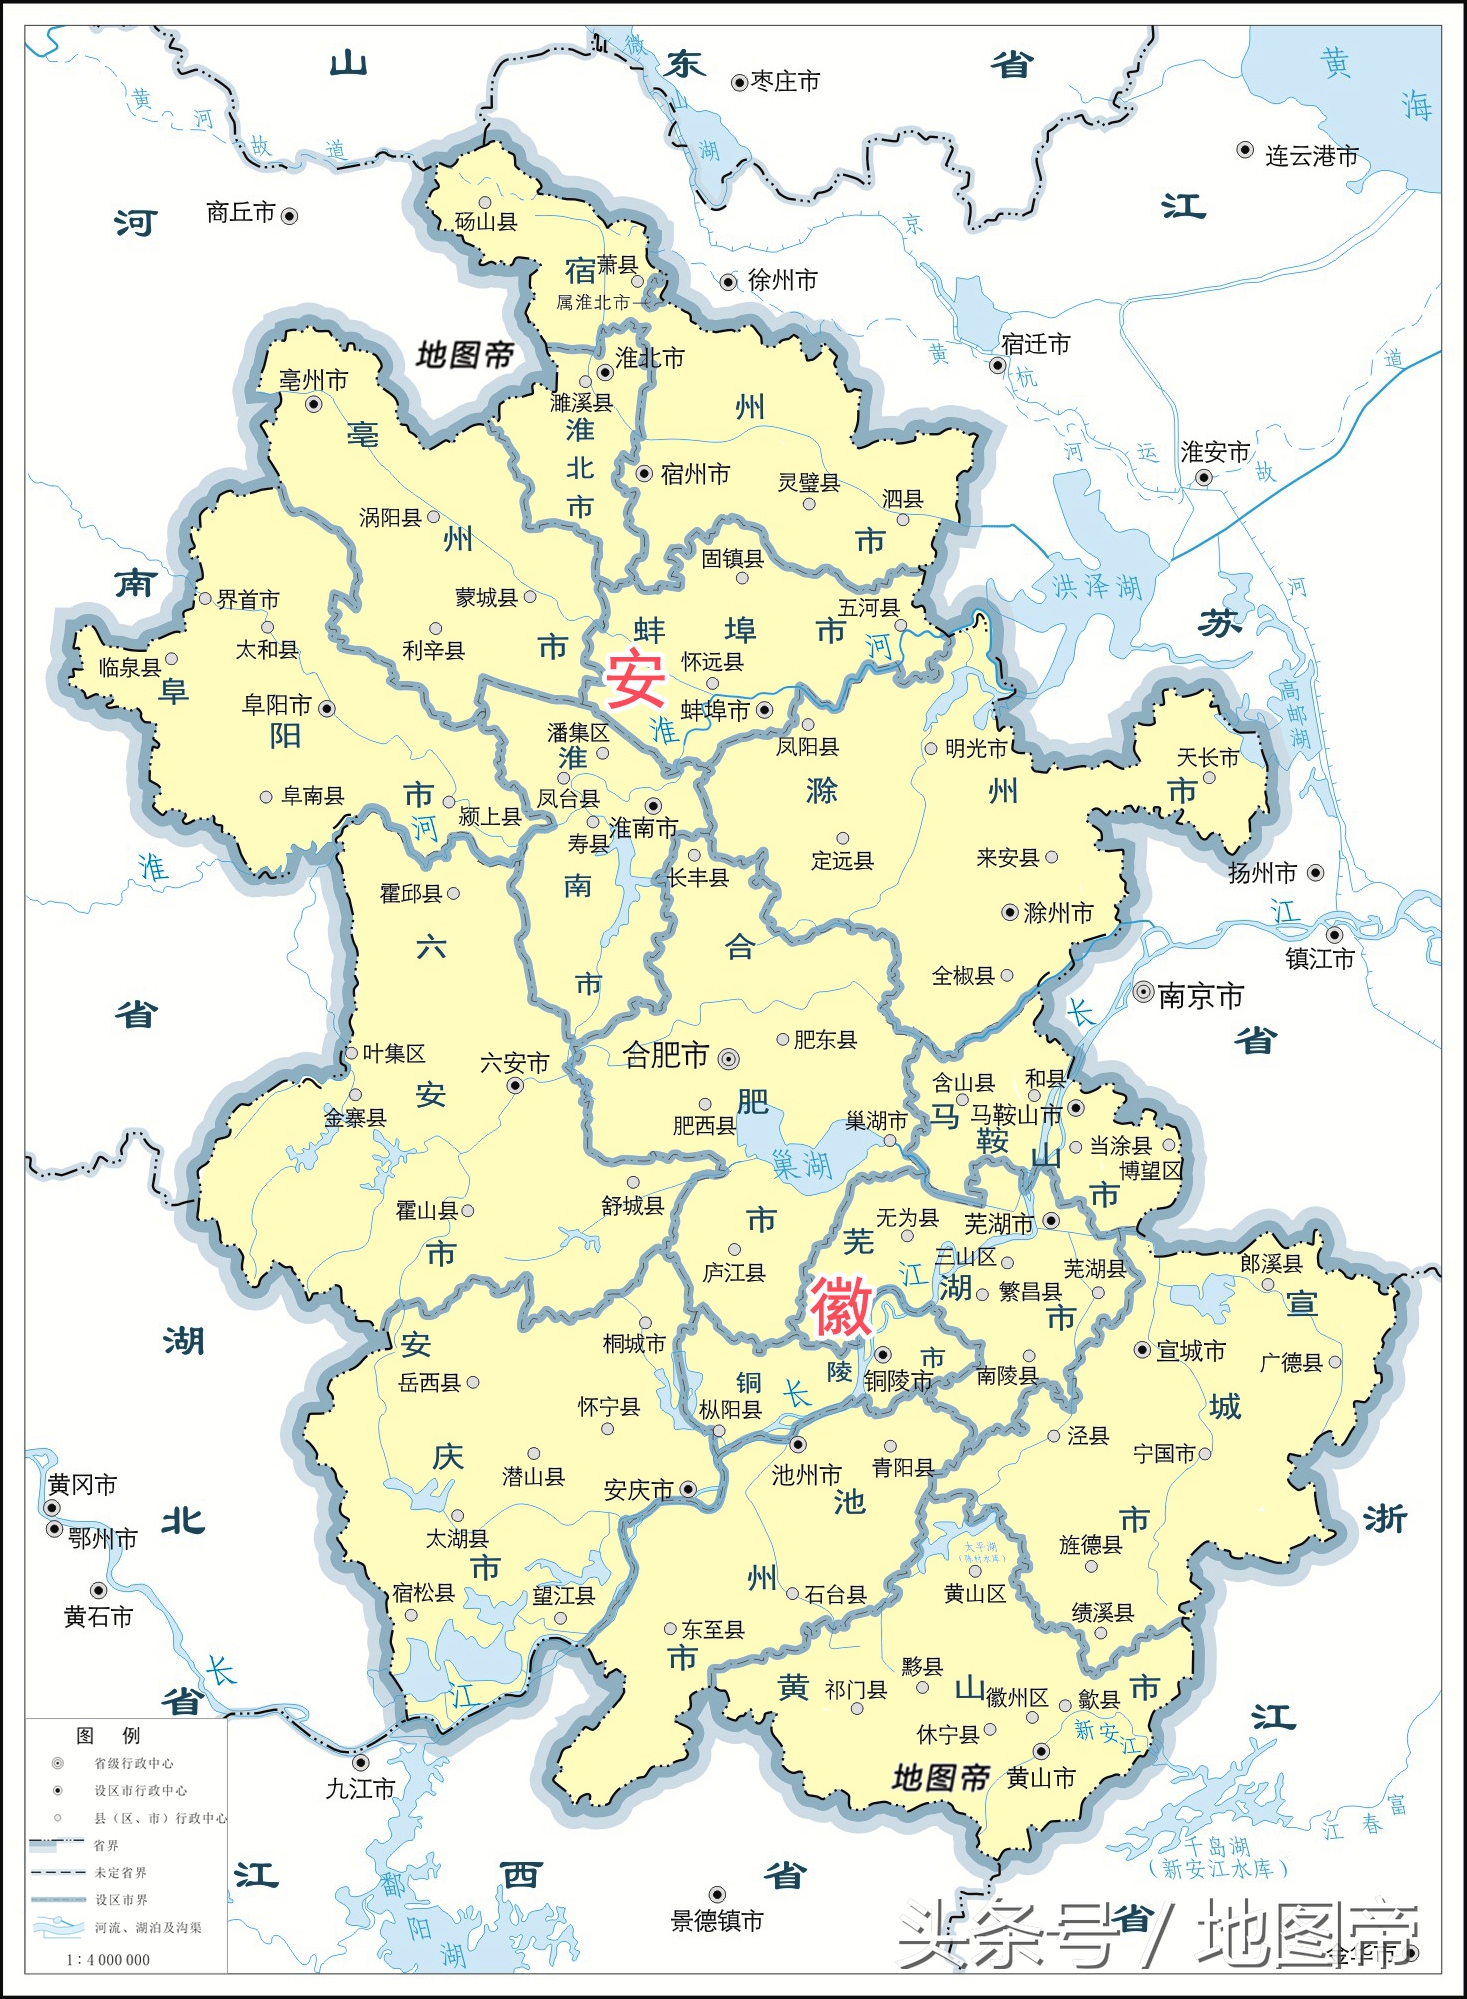 1/ 12 从地图上看,安徽省东部的天长市被临近的江苏省内的南京市六合图片